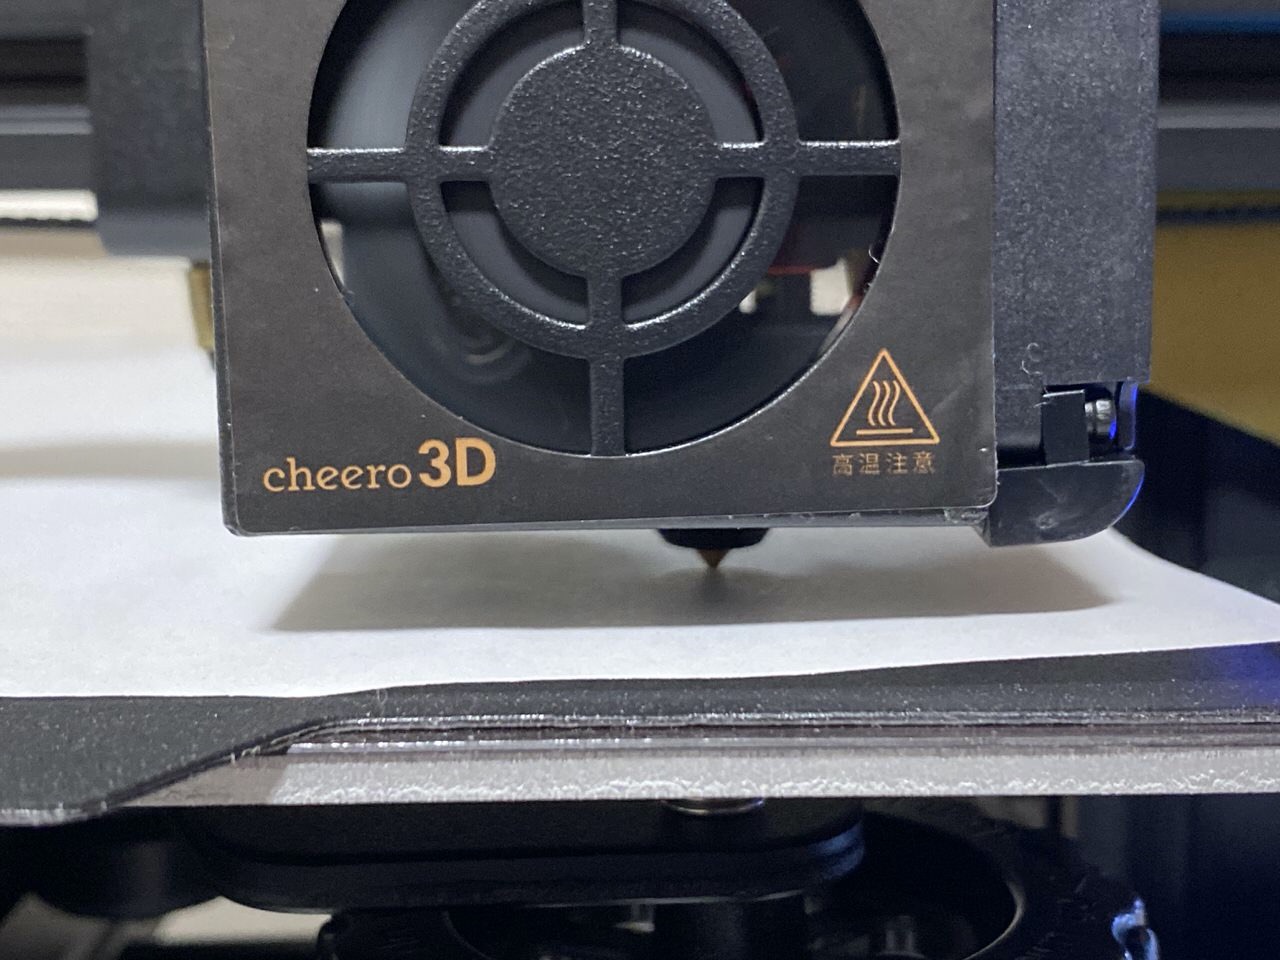 3Dプリンター始めました】「cheero3D Pro」3Dプリンター初心者のデビューメモ 〜購入から印刷まで ネタフル